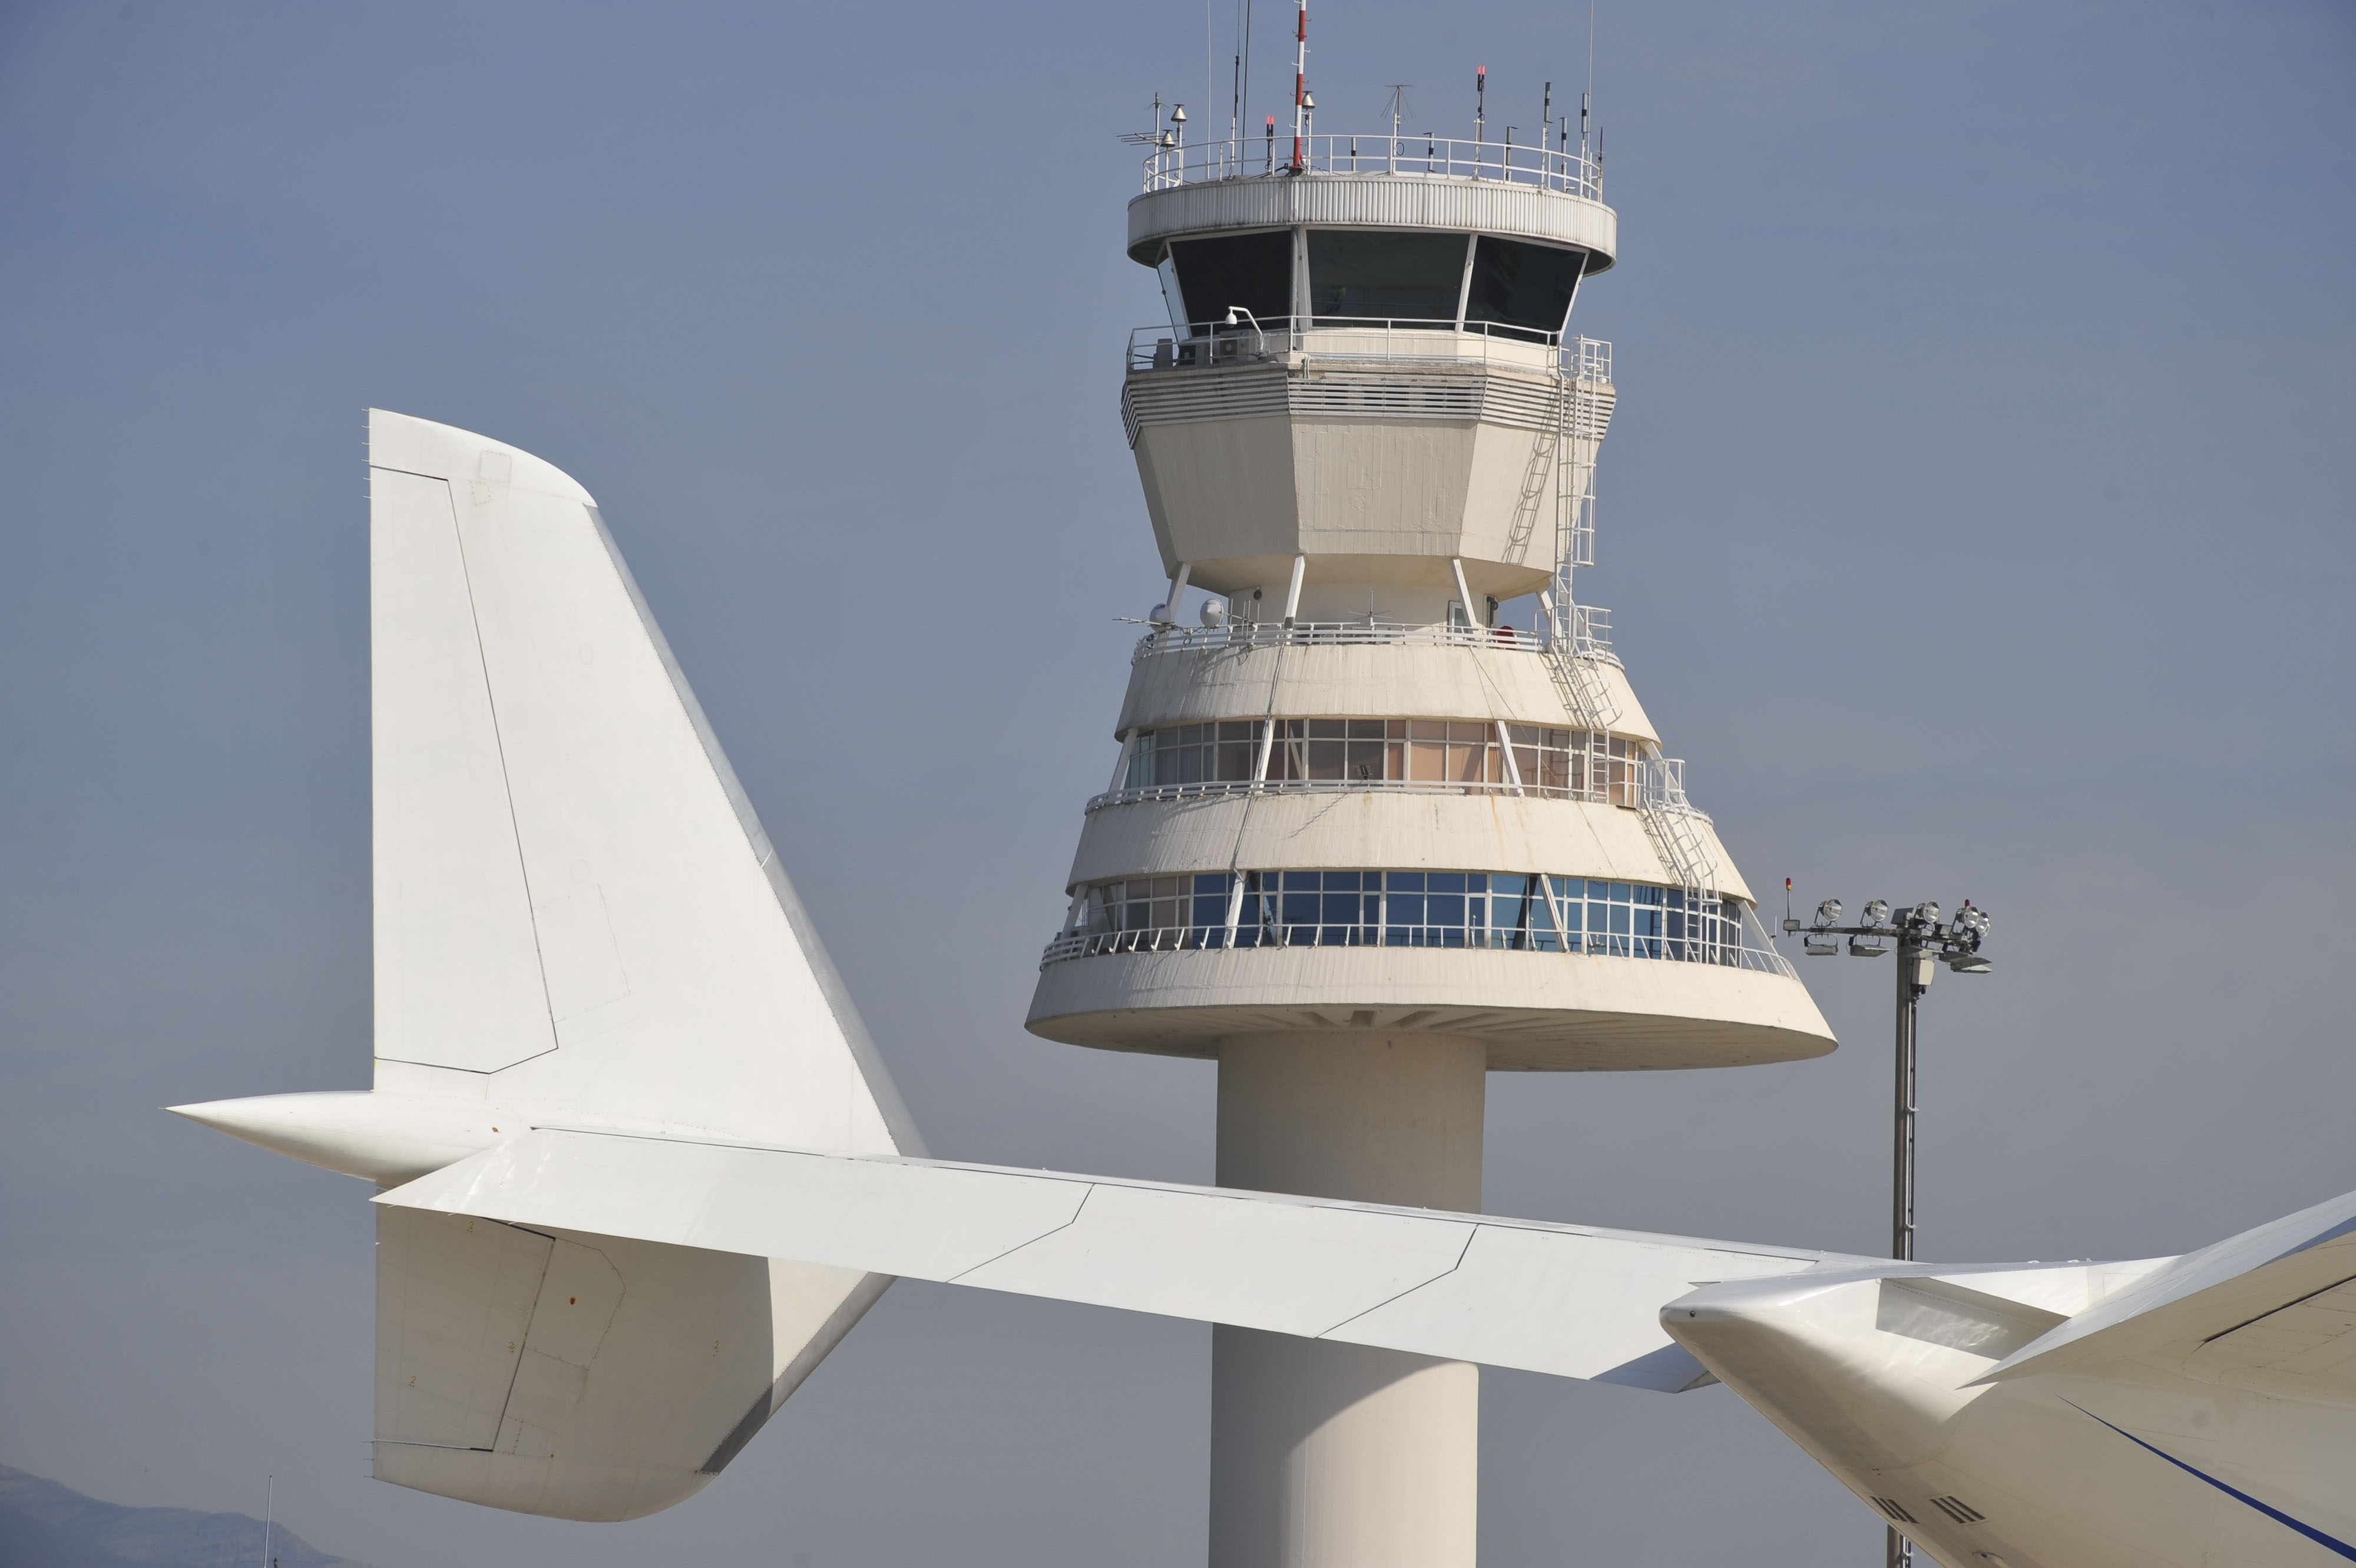 Torre de control de un aeropuerto